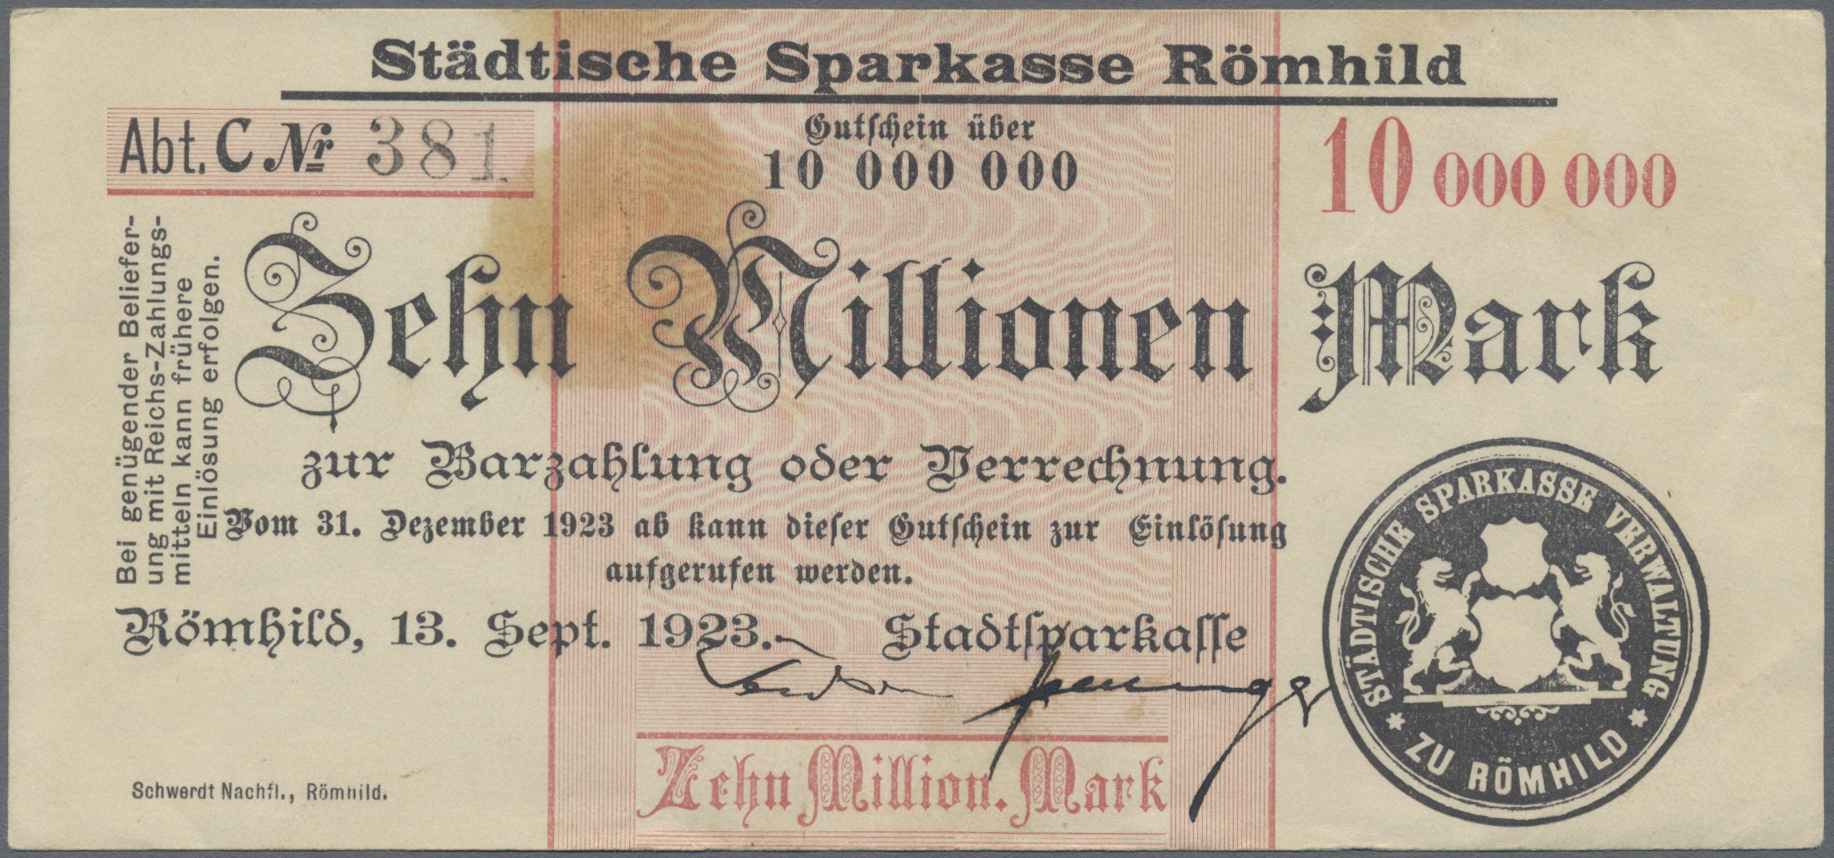 Lot 14865 - Deutschland - Notgeld - Thüringen | Banknoten  -  Auktionshaus Christoph Gärtner GmbH & Co. KG 53rd AUCTION - Day 6 Coins & Banknotes